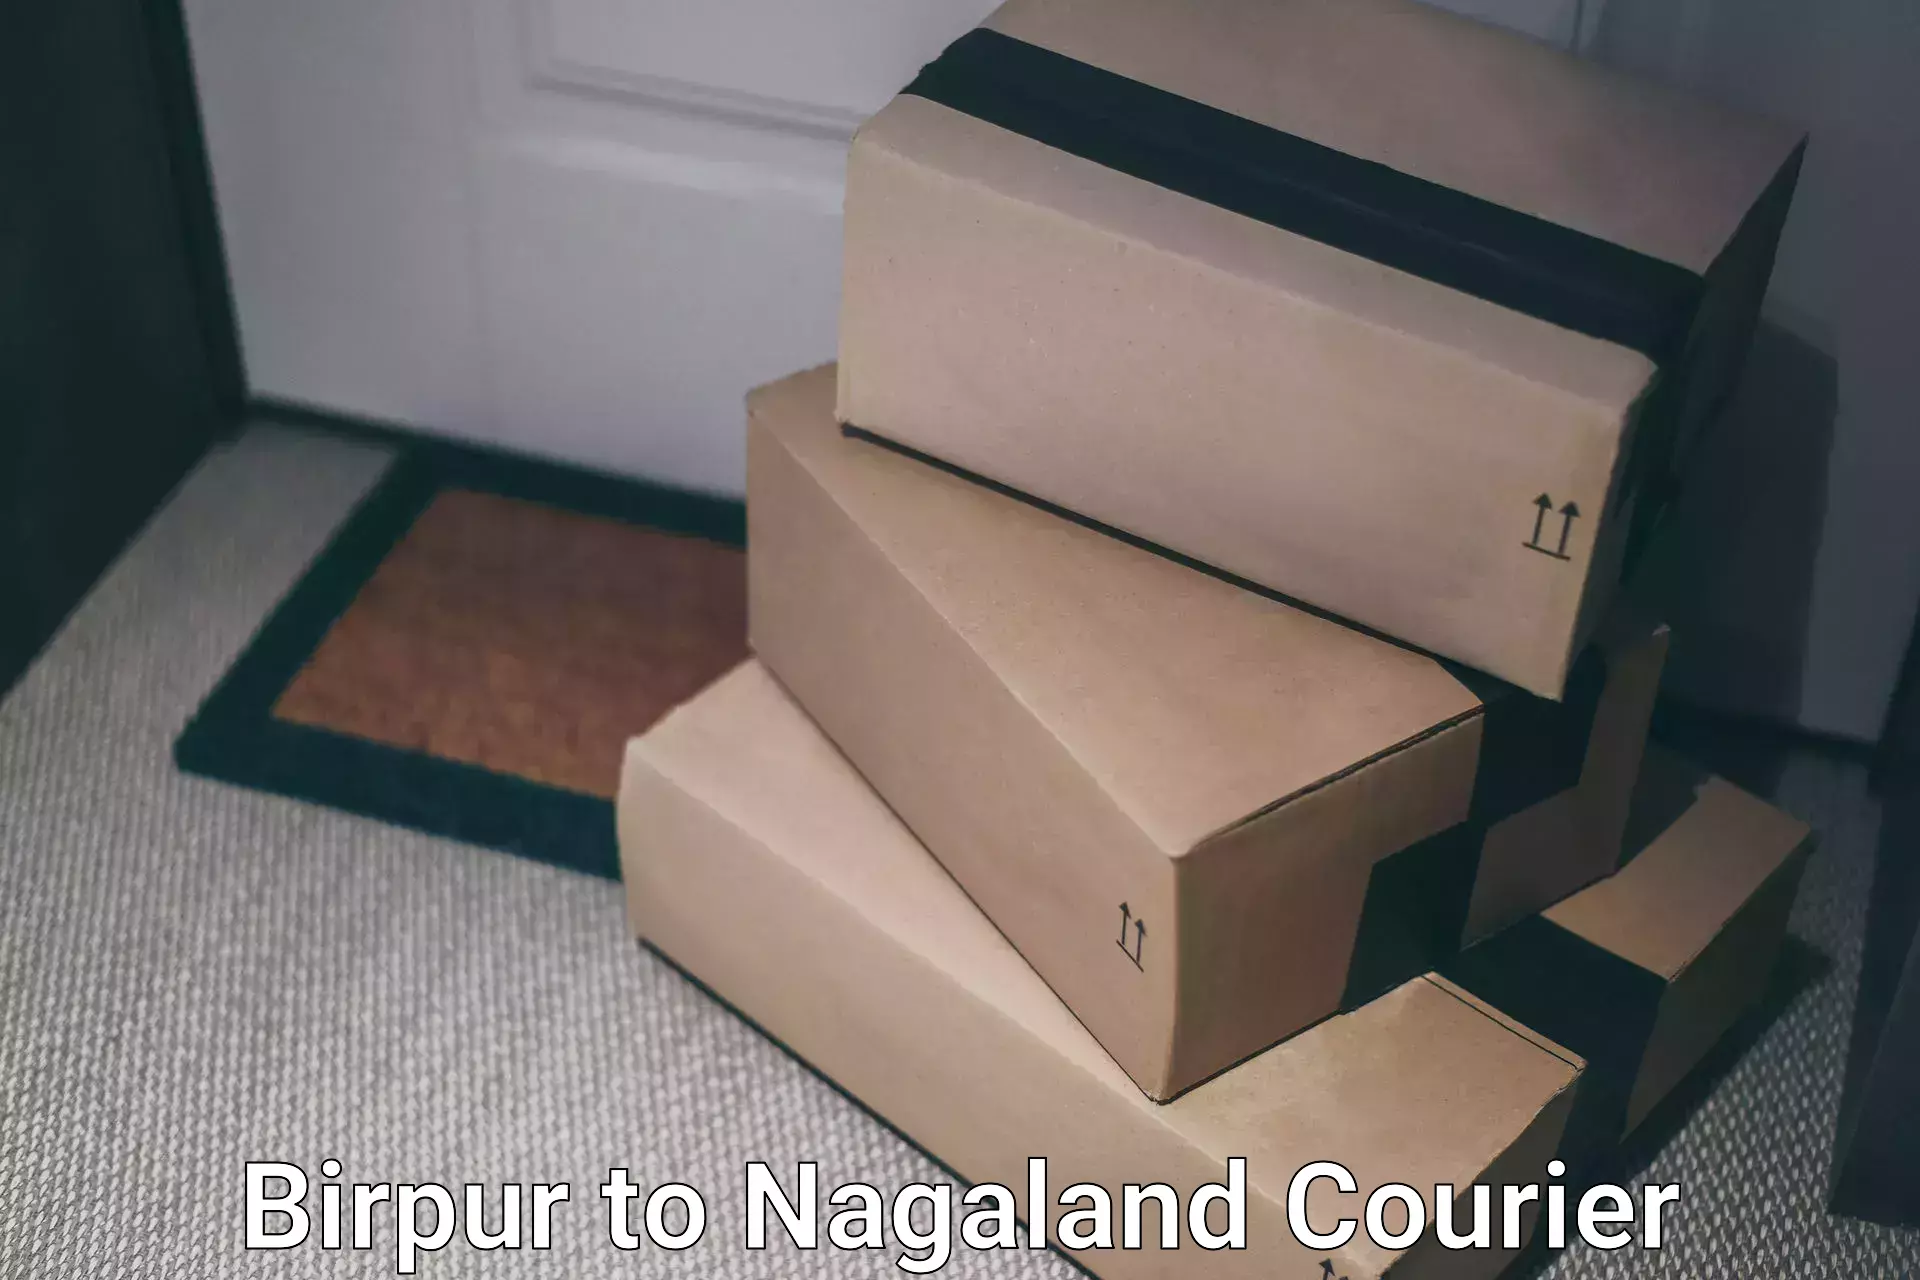 Customer-centric shipping Birpur to Nagaland